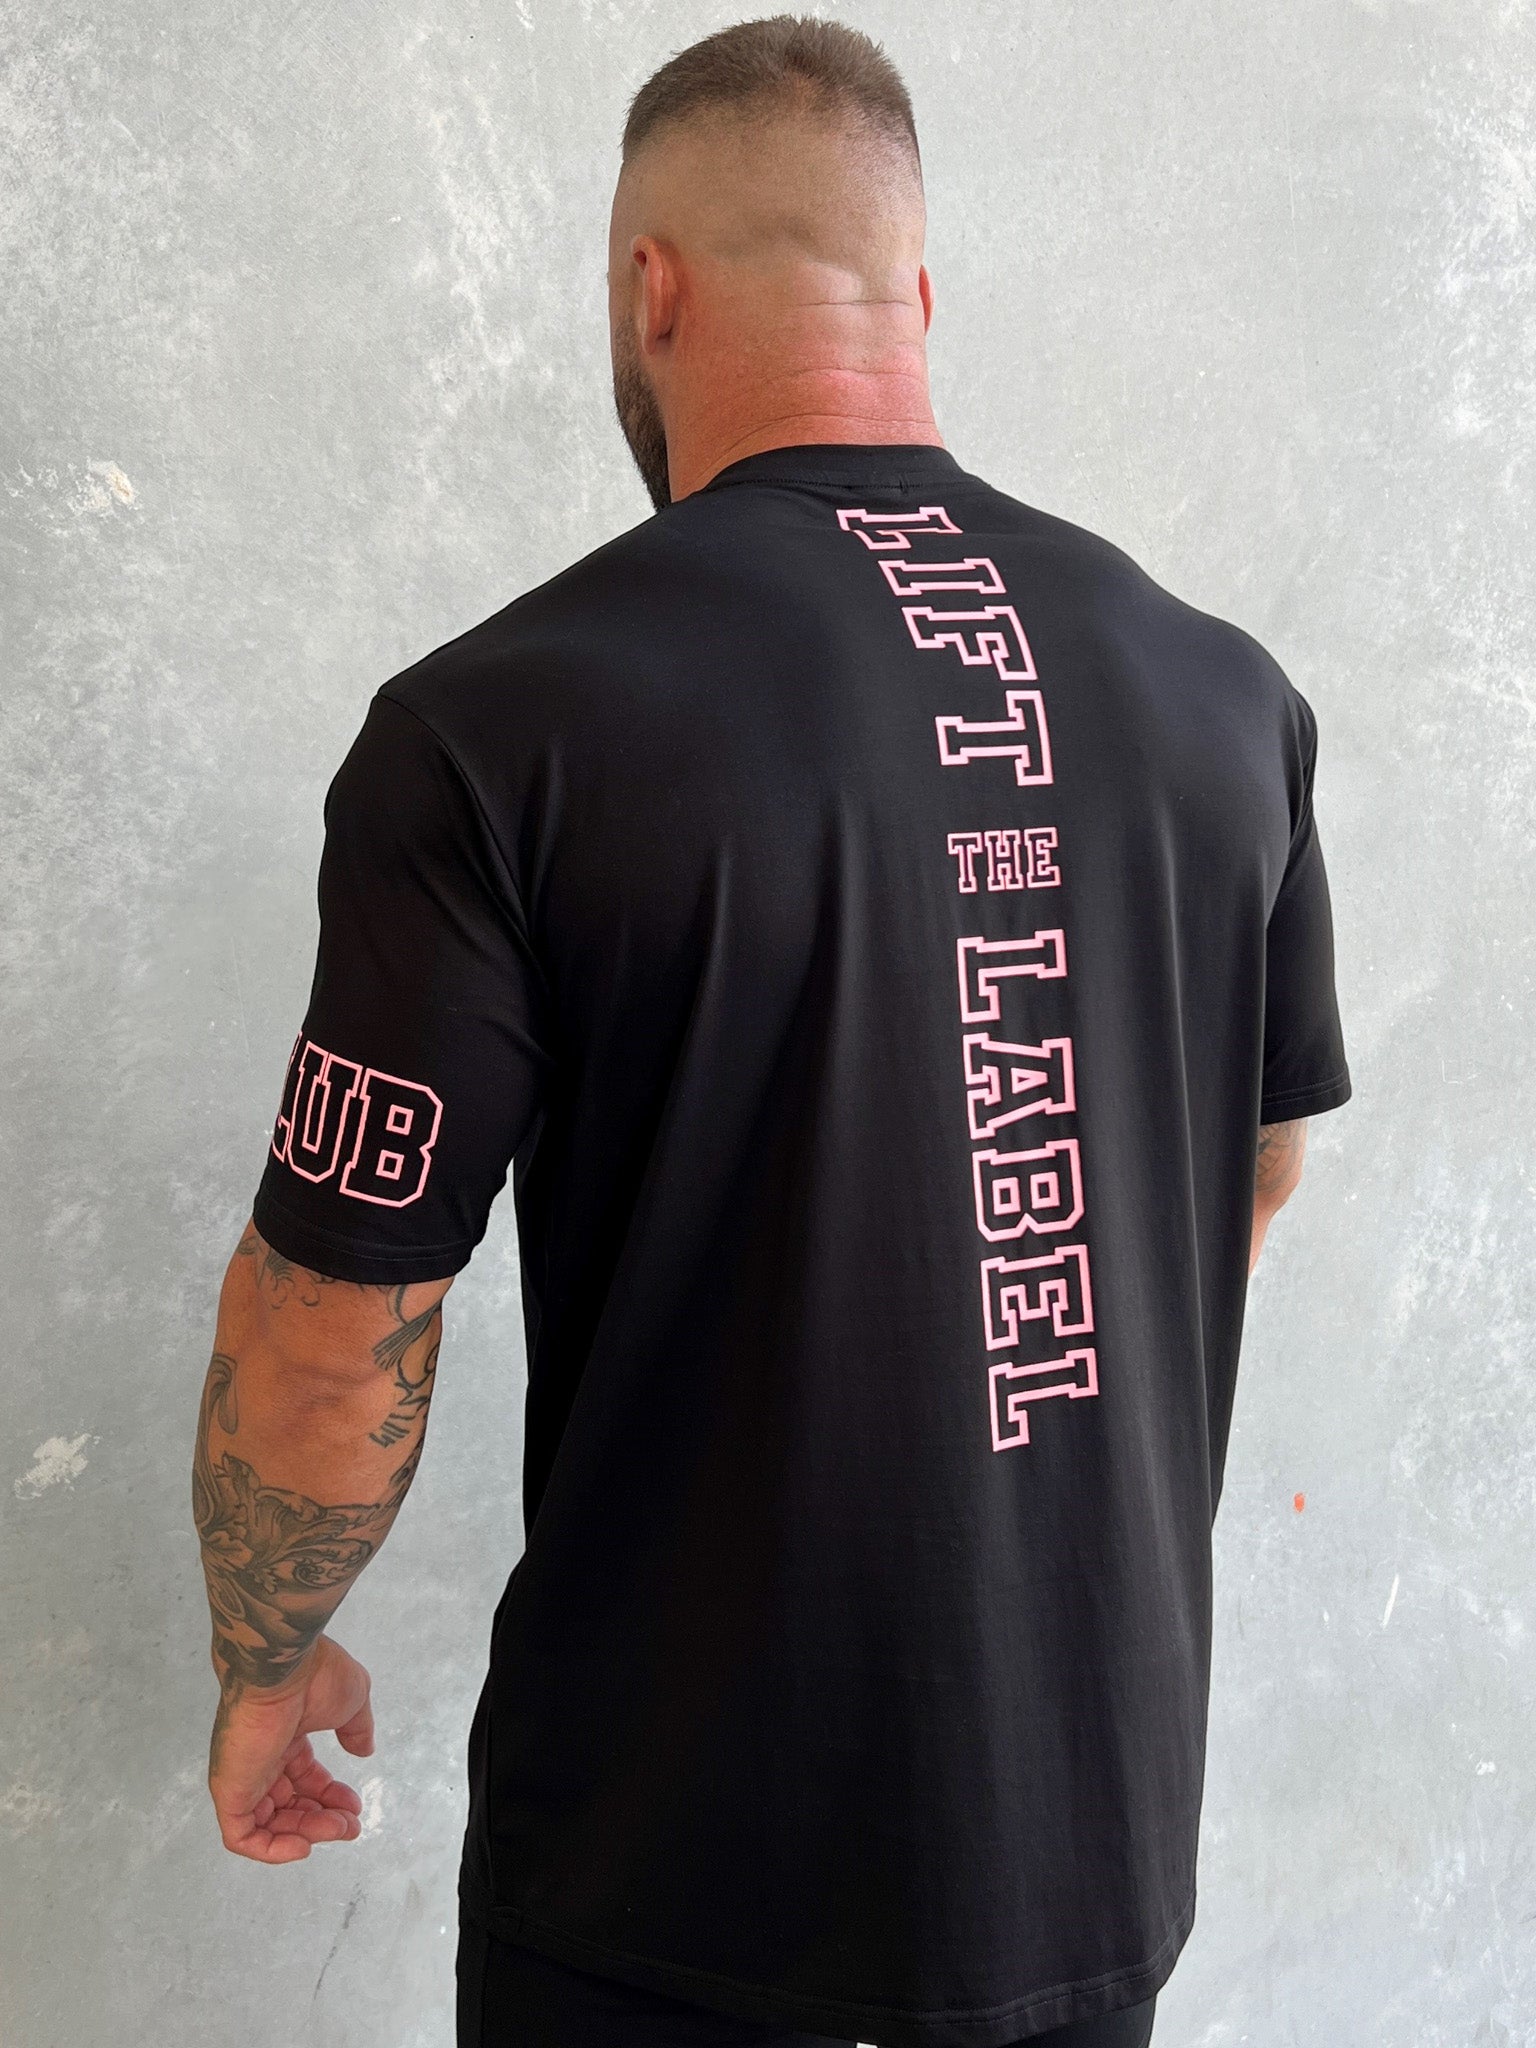 Team Hitter Tee - Black / Pink Logo